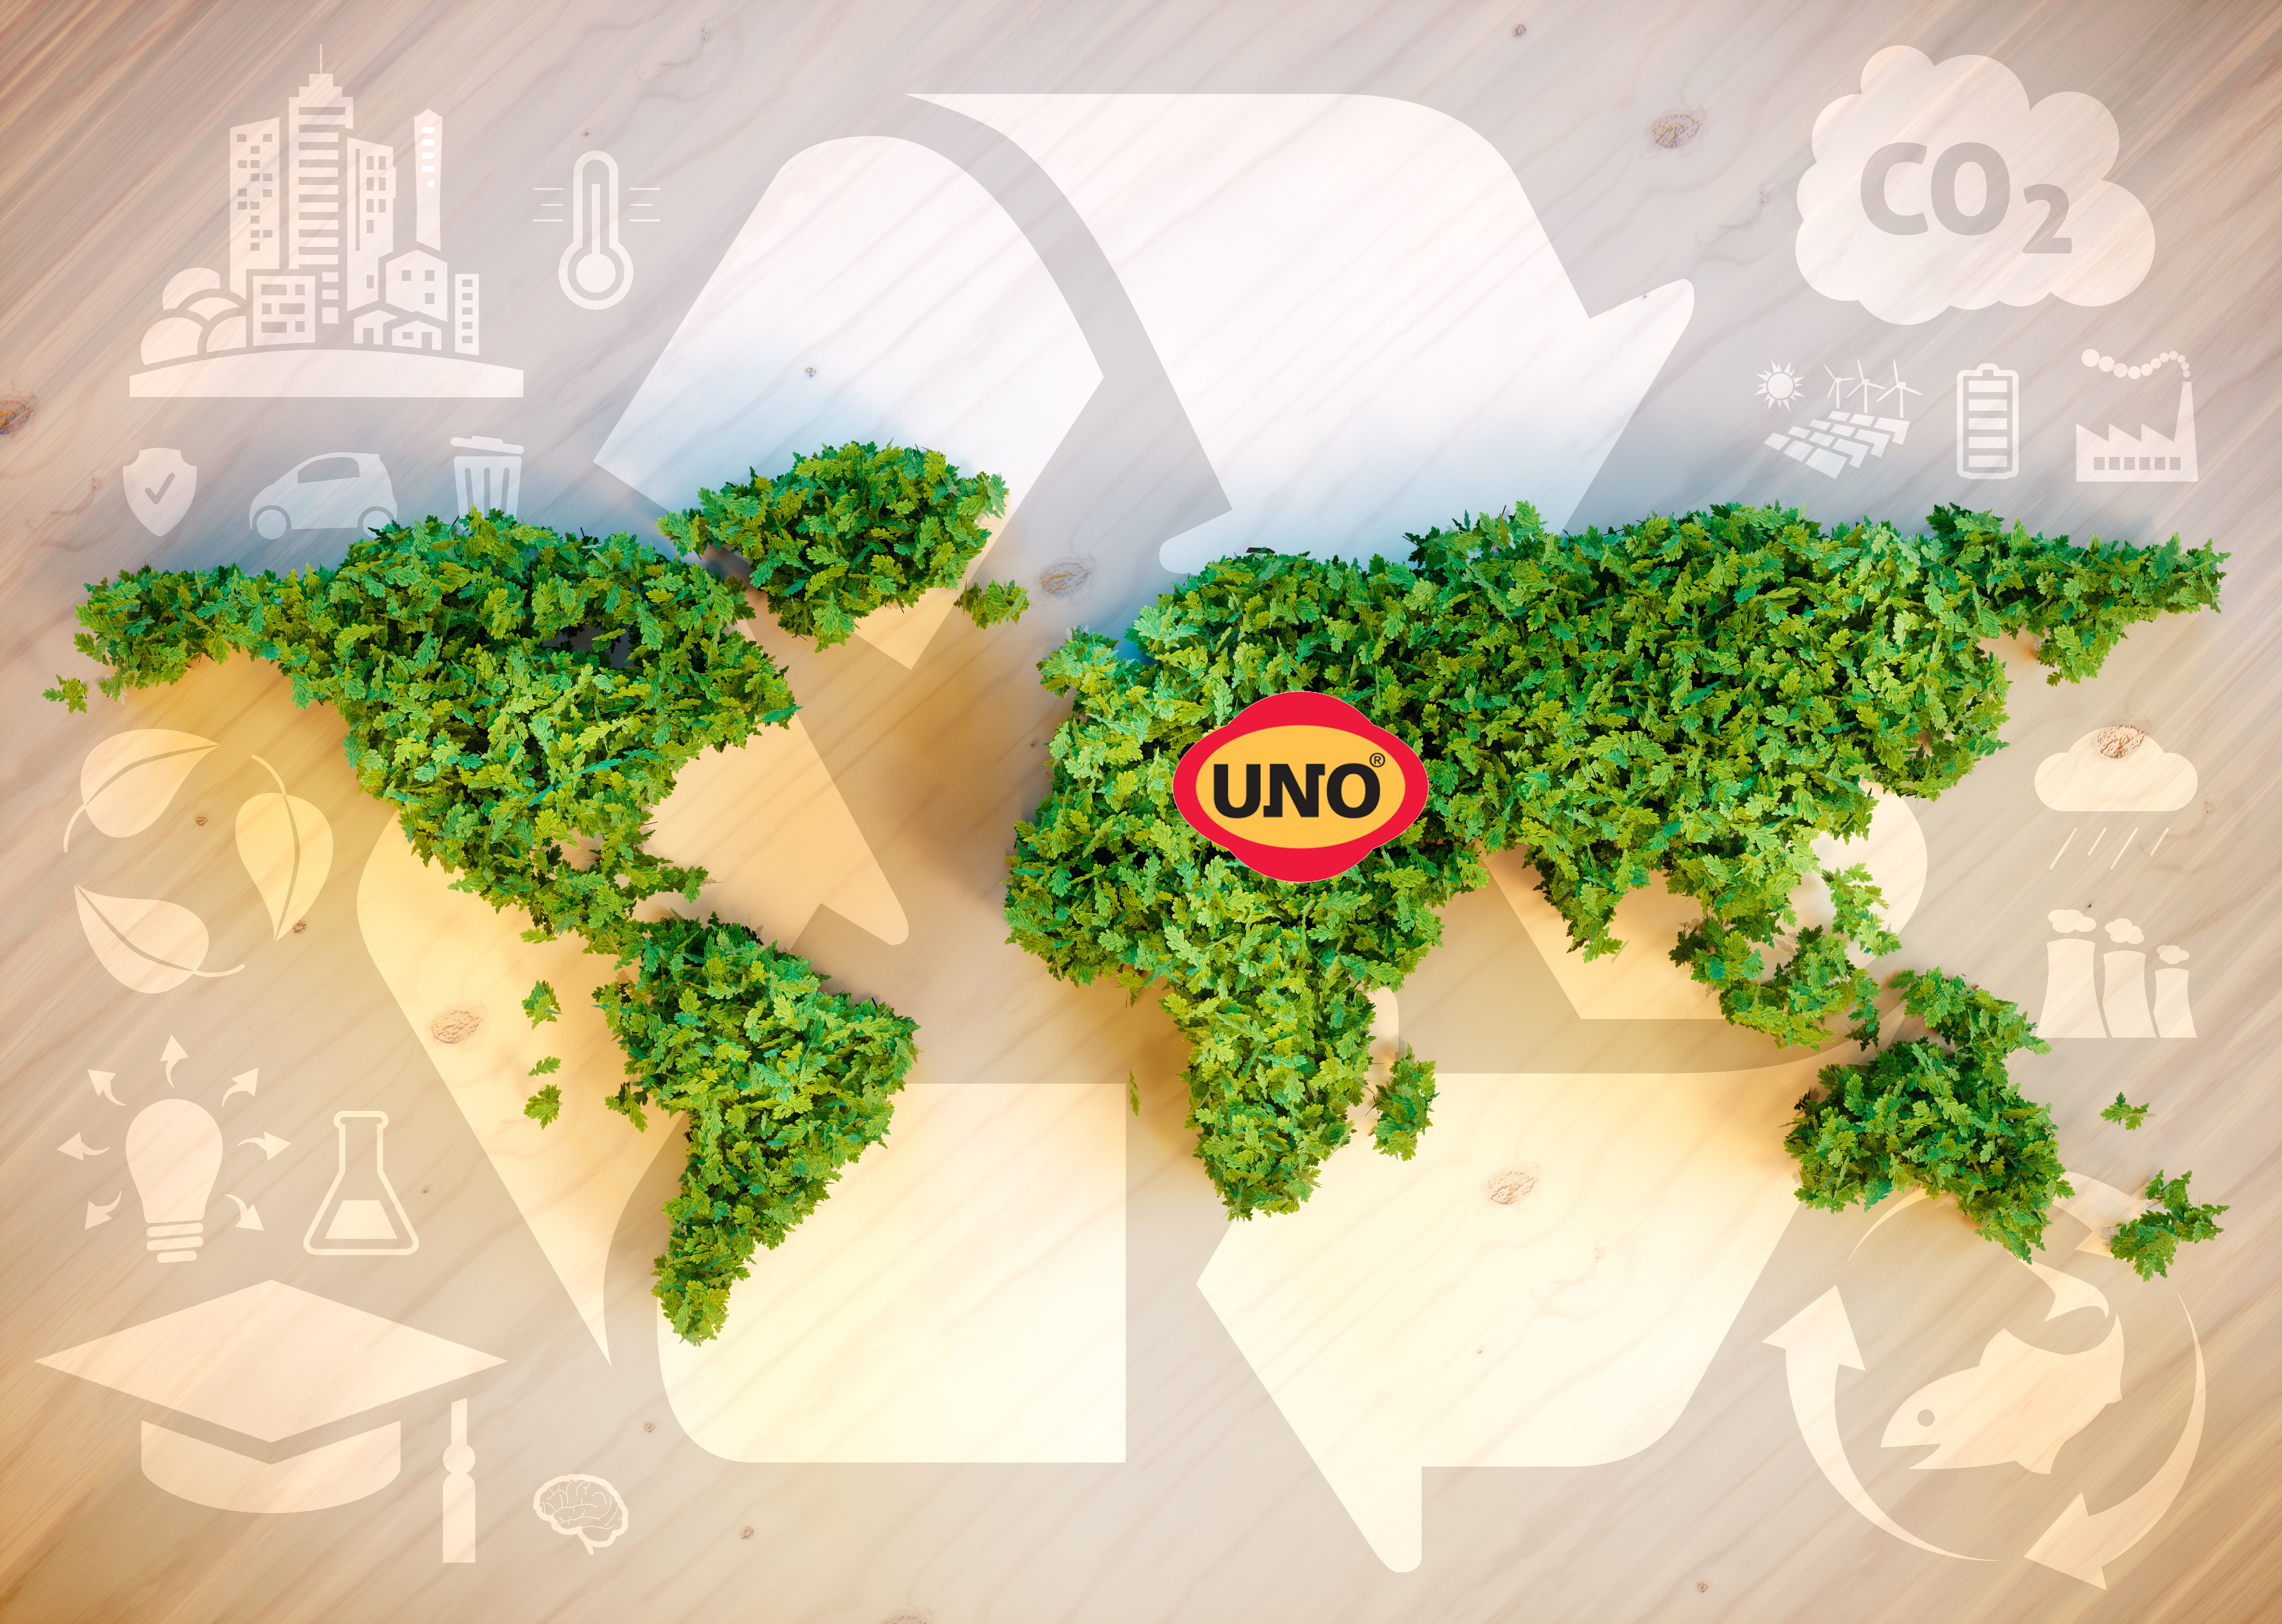 UNO Sürdürülebilir Bir Dünya için Çalışmaya Devam Eden UNO 2020 Sürdürülebilirlik Raporu’nu yayınladı